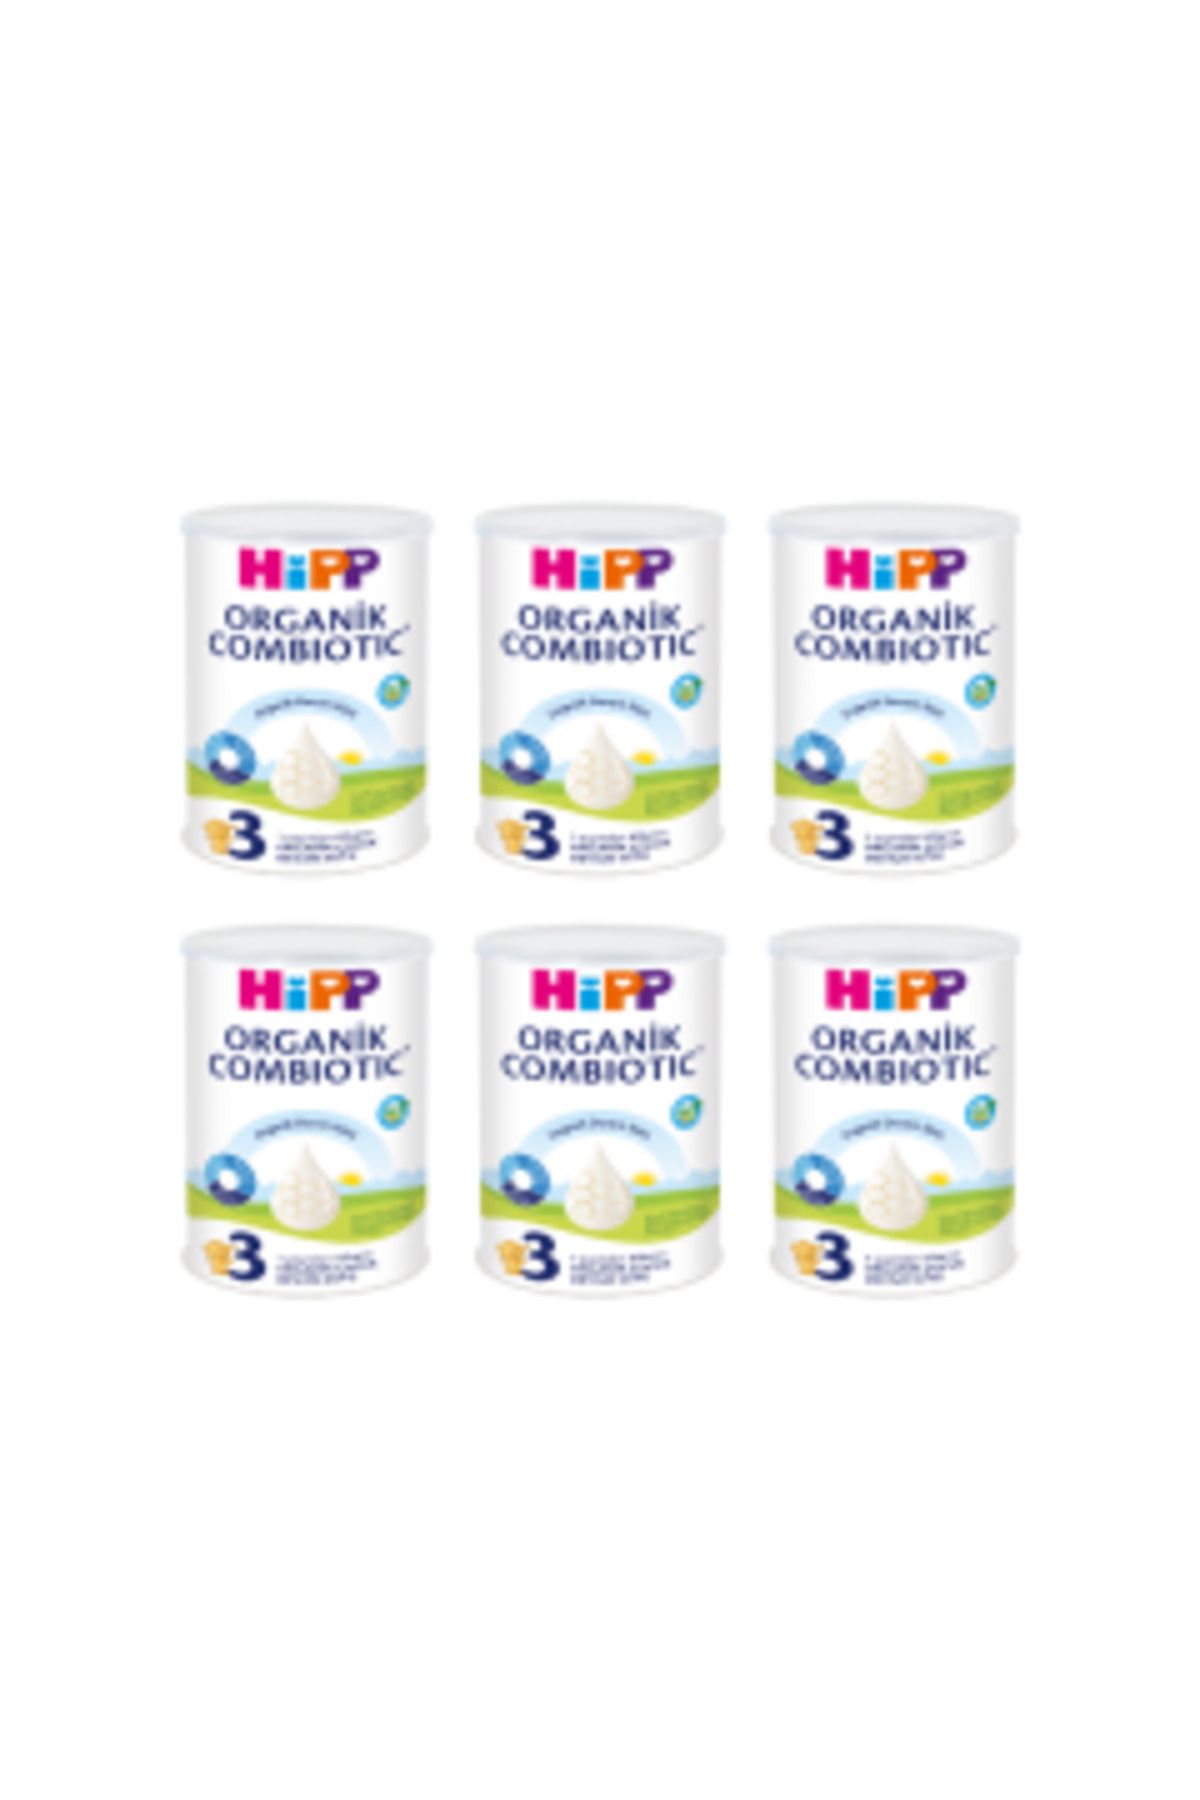 Hipp 3 Organik Combiotic Devam Sütü 6 Adet 350 Gr ( 1 ADET )